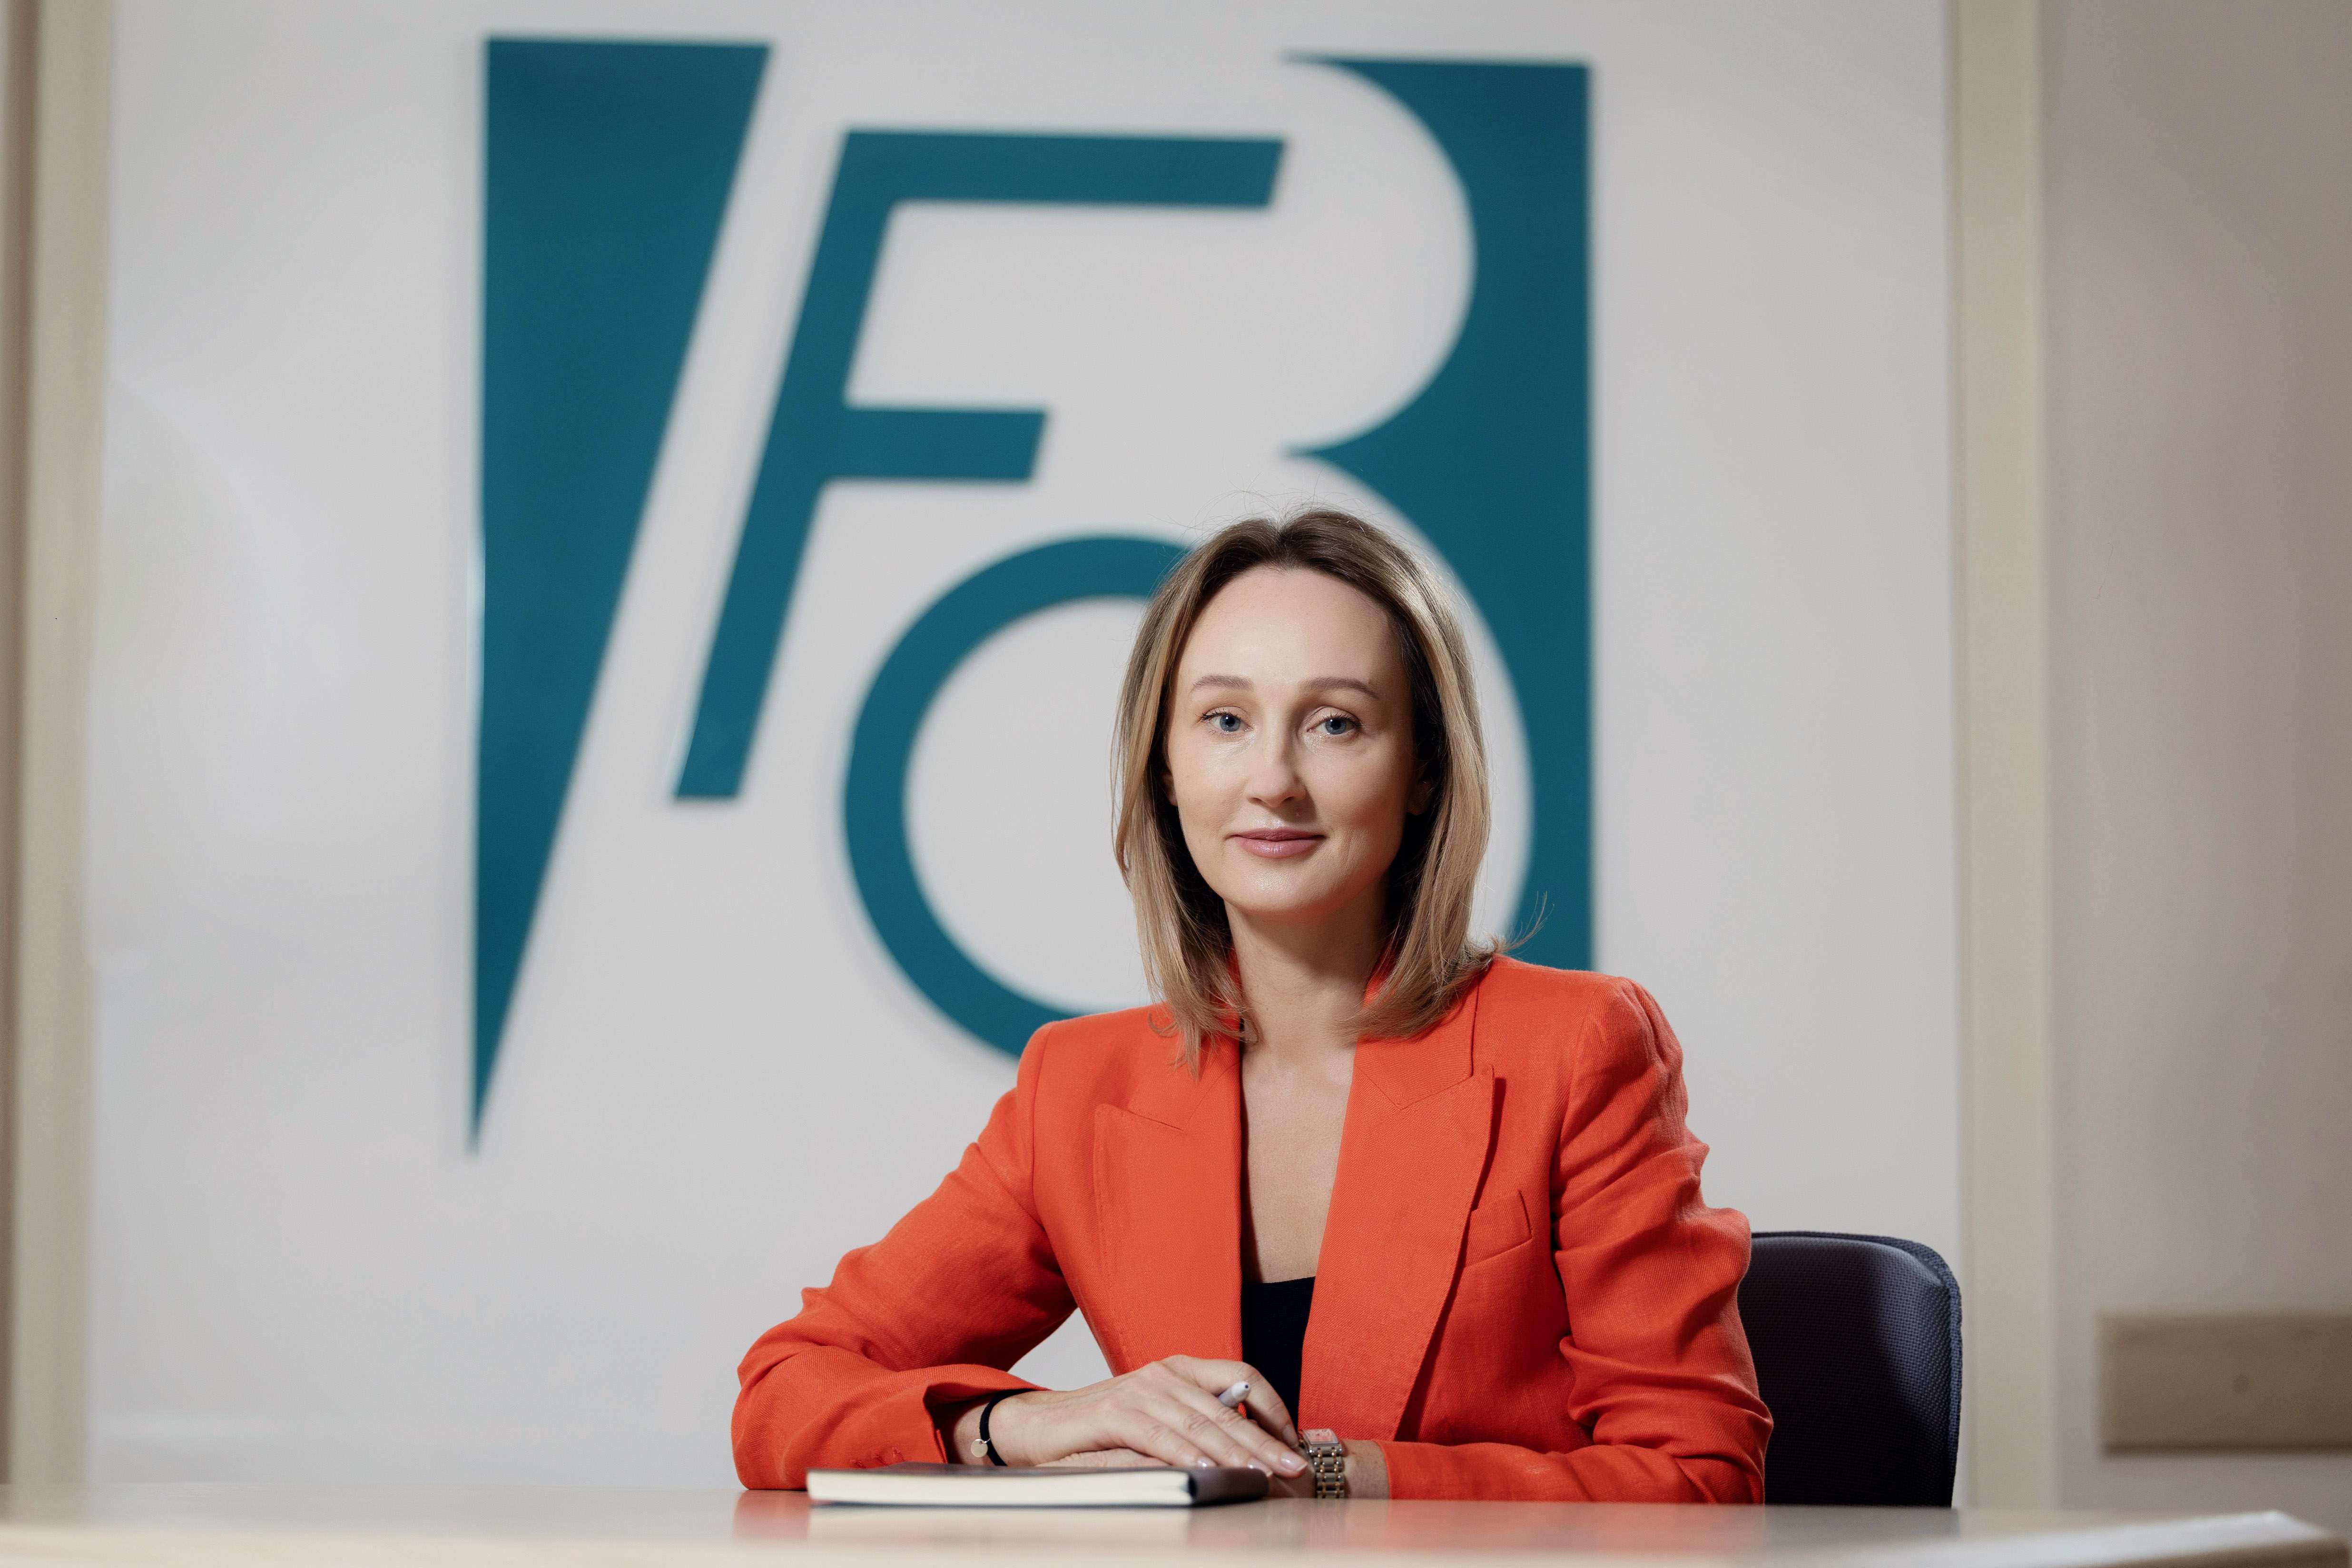 Natalia Codreanu este noua Preşedintă a Comitetului de Conducere FinComBank